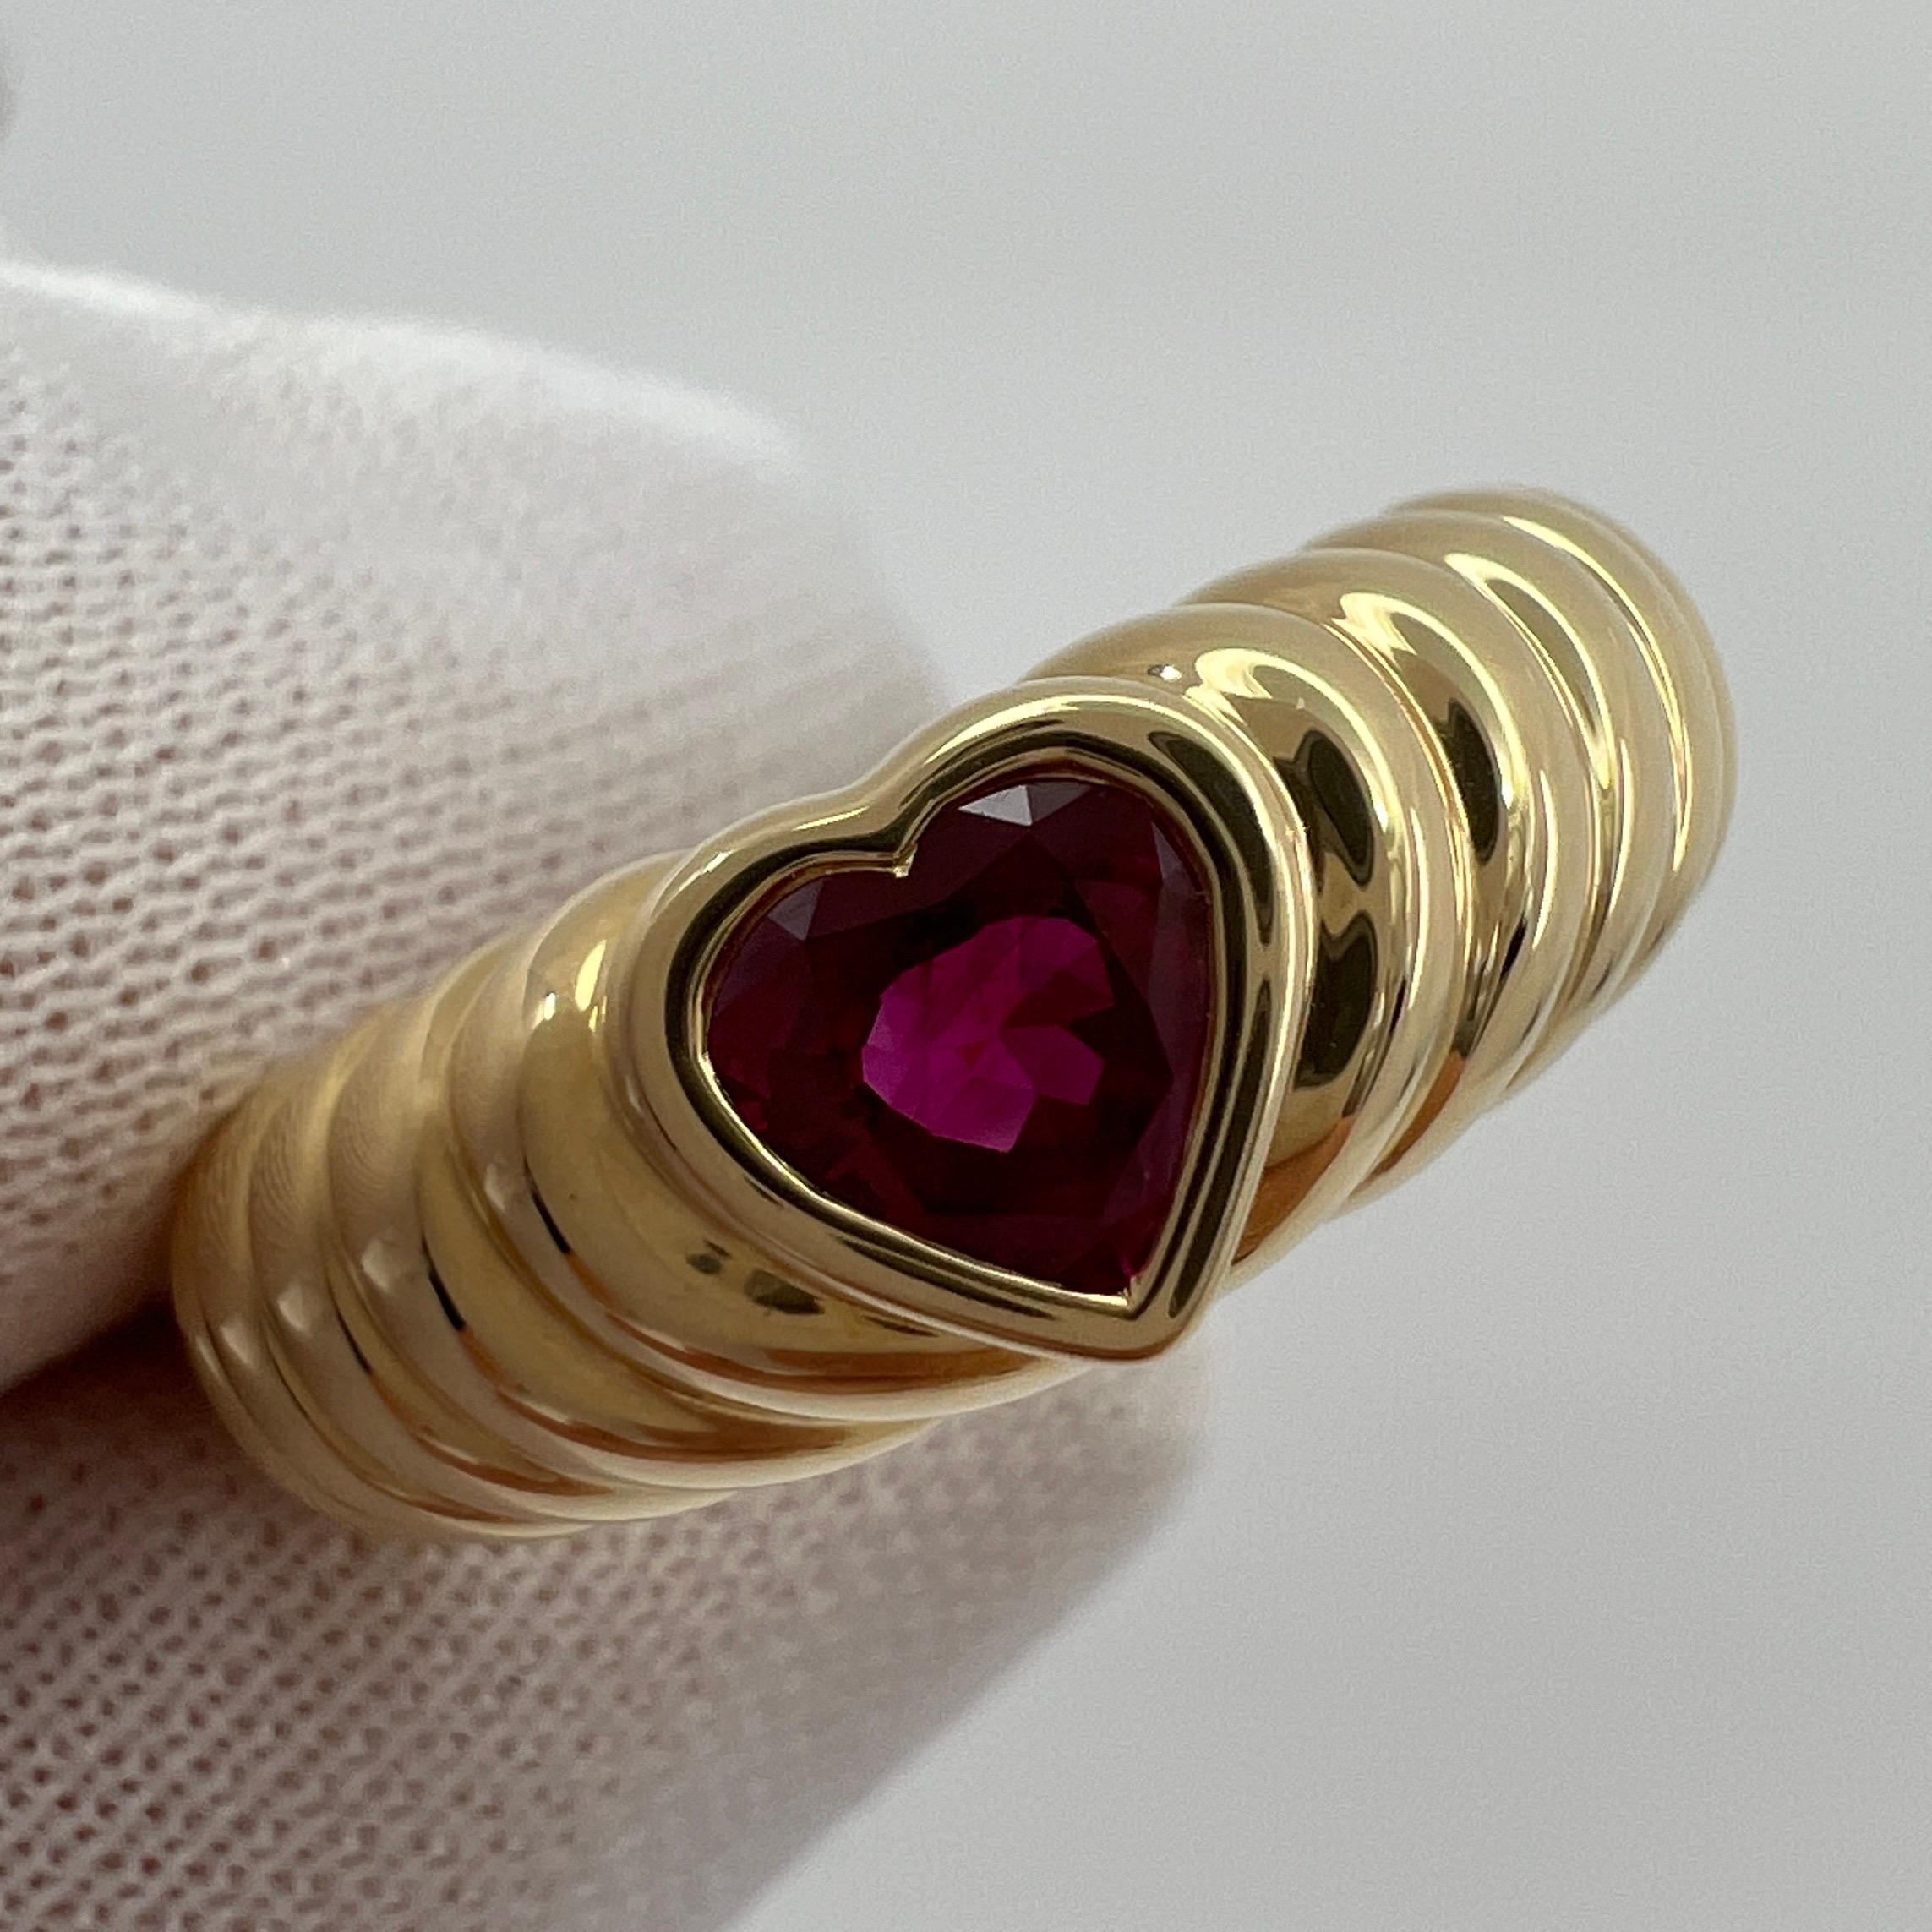 Seltene Tiffany & Co. Vivid Blood Red Ruby Heart Cut 18k Gelbgold Band Ring.

Ein wunderschön gearbeiteter Ring aus Gelbgold, besetzt mit einem atemberaubenden blutroten Rubin im Herzschliff. Hervorragende Farbe, Klarheit und Schliff. Edle Juweliere